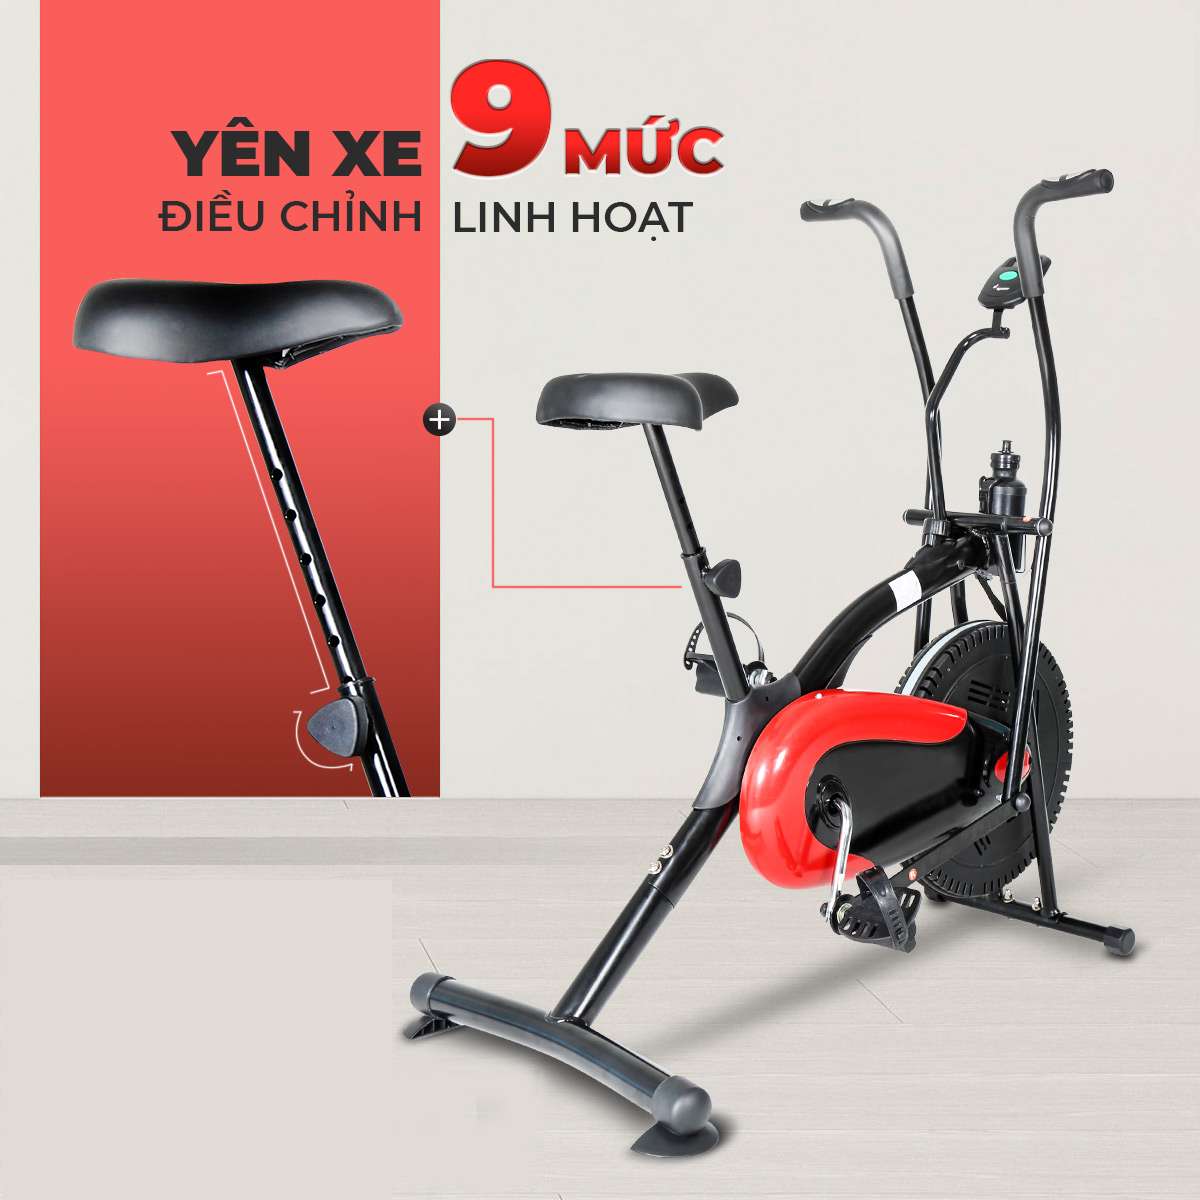 Địa chỉ mua xe đạp tập thể dục ở Hà Giang tốt nhất